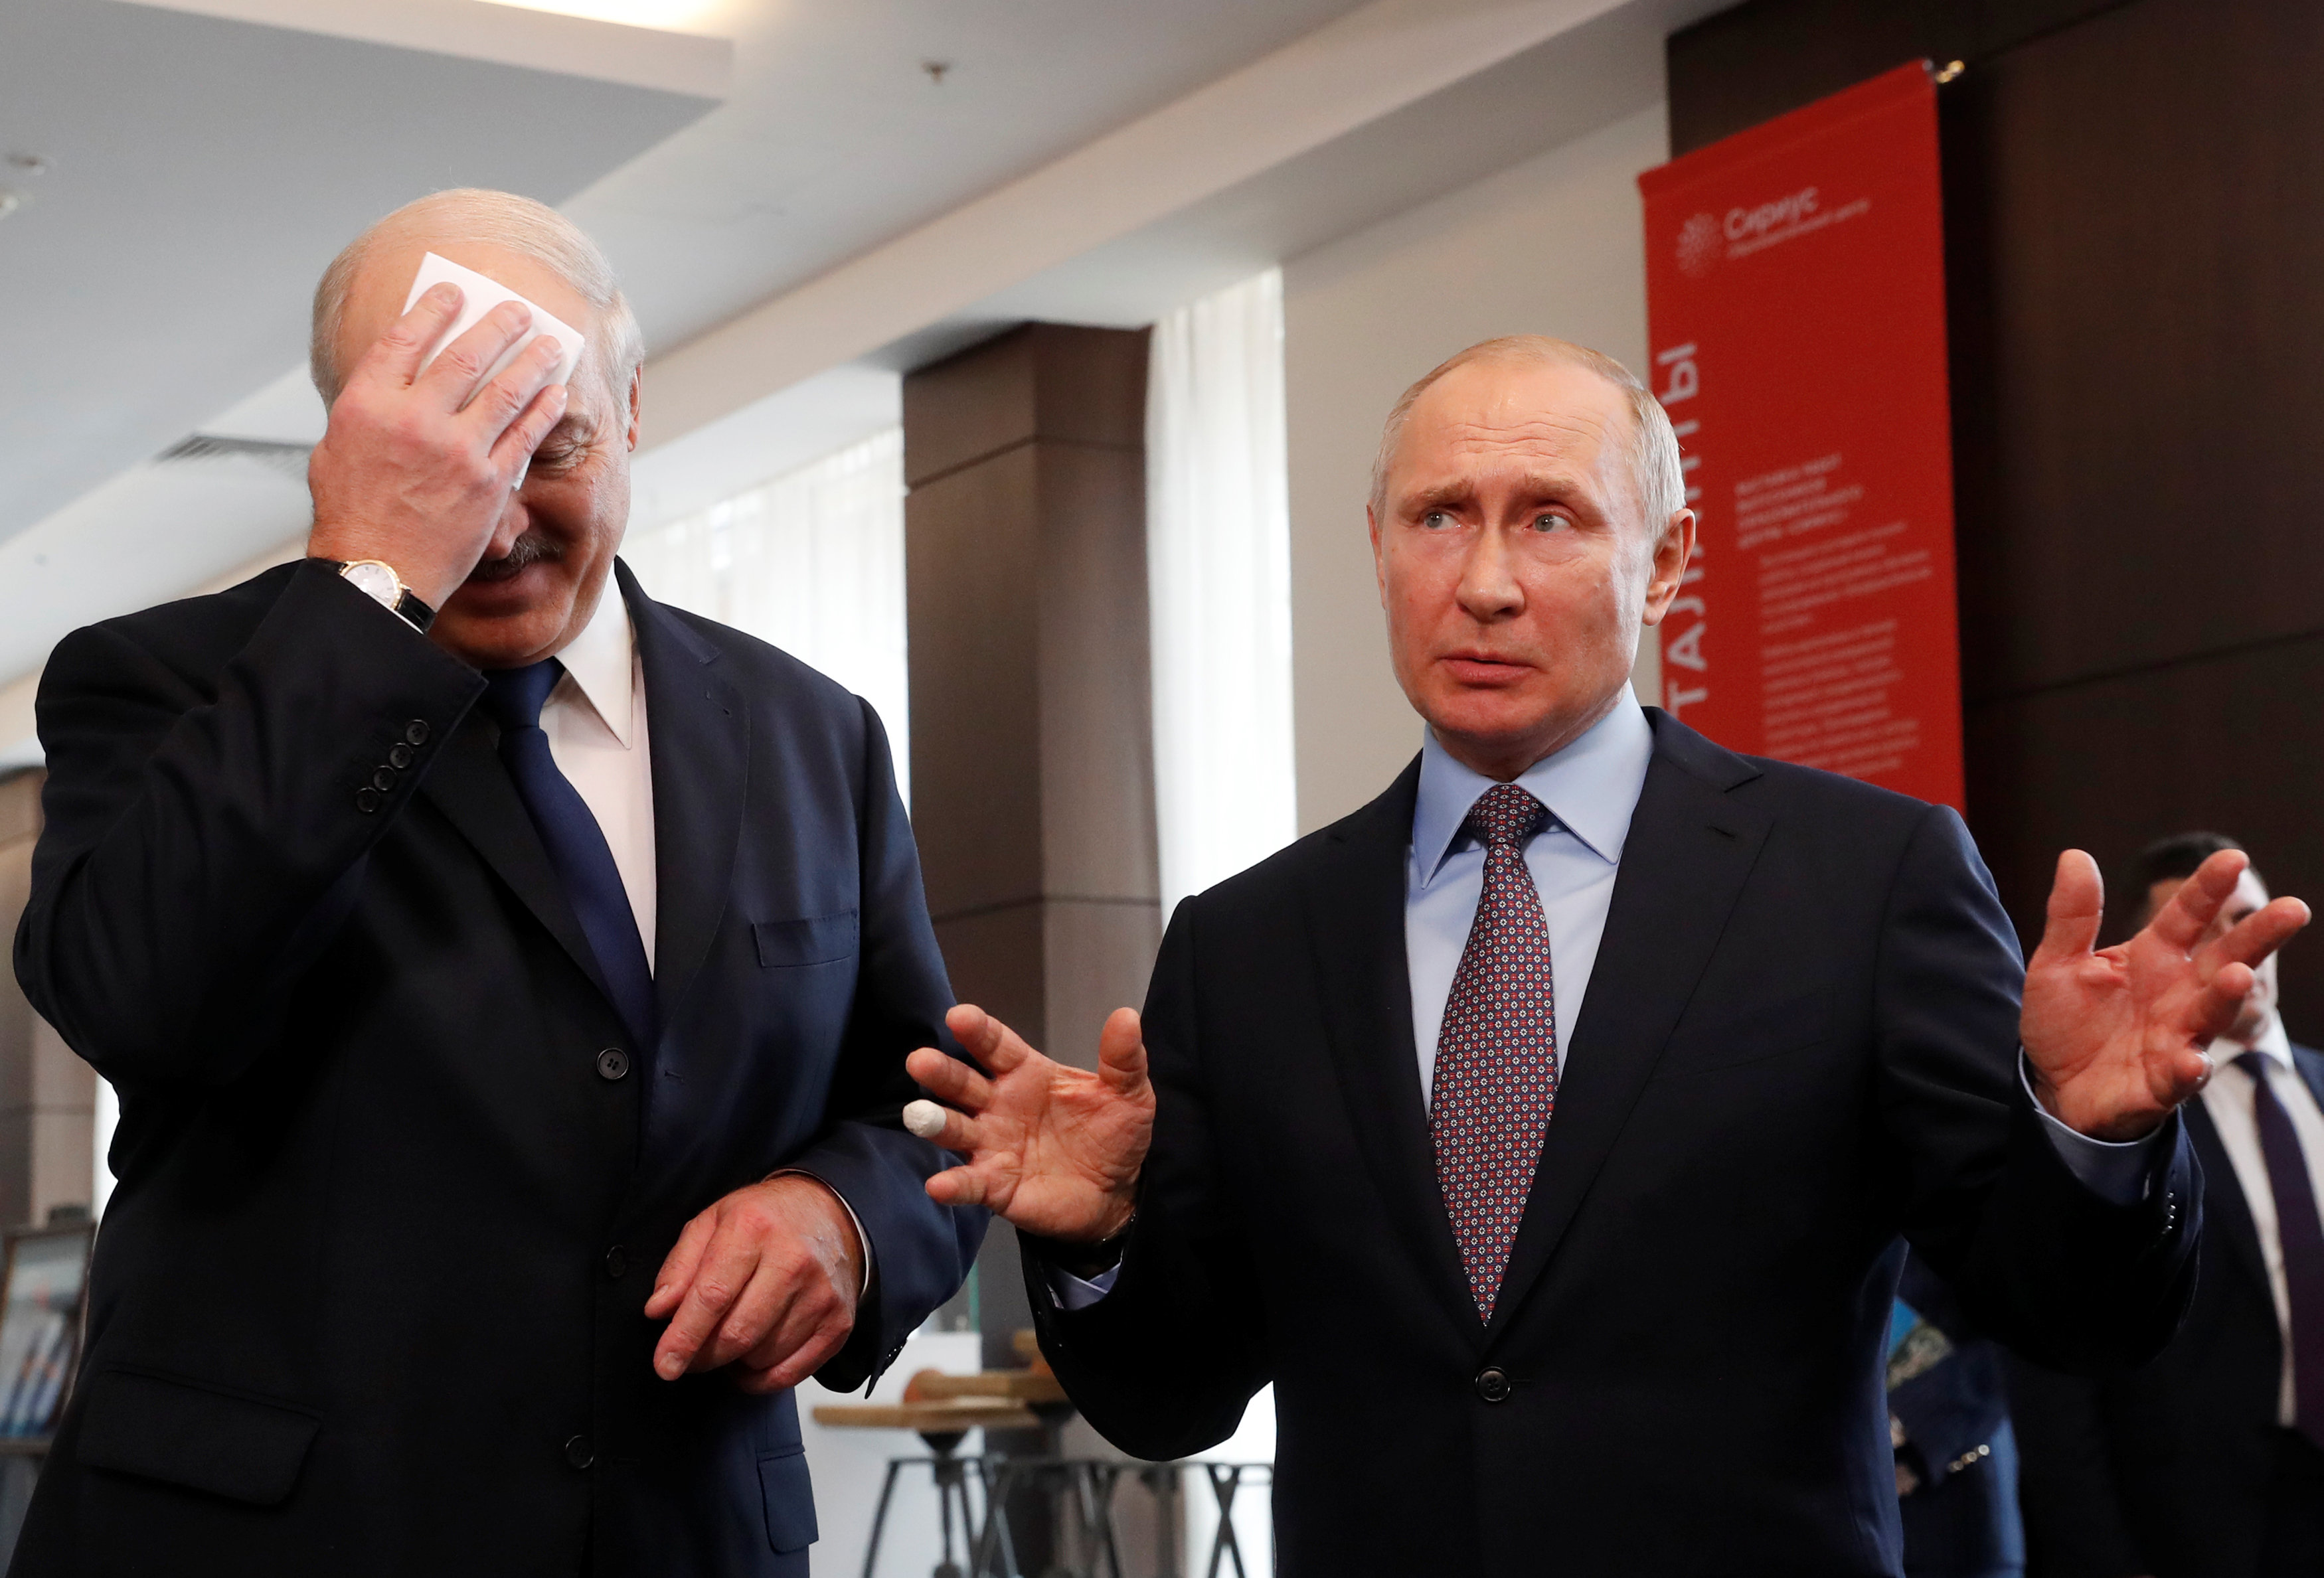 El presidente ruso, Vladímir Putin, gesticula junto al presidente de Bielorrusia, Alexander Lukashenko, durante su reunión en el centro educativo Sirius en el balneario del mar Negro de Sochi, Rusia 15 de febrero de 2019 (Reuters)